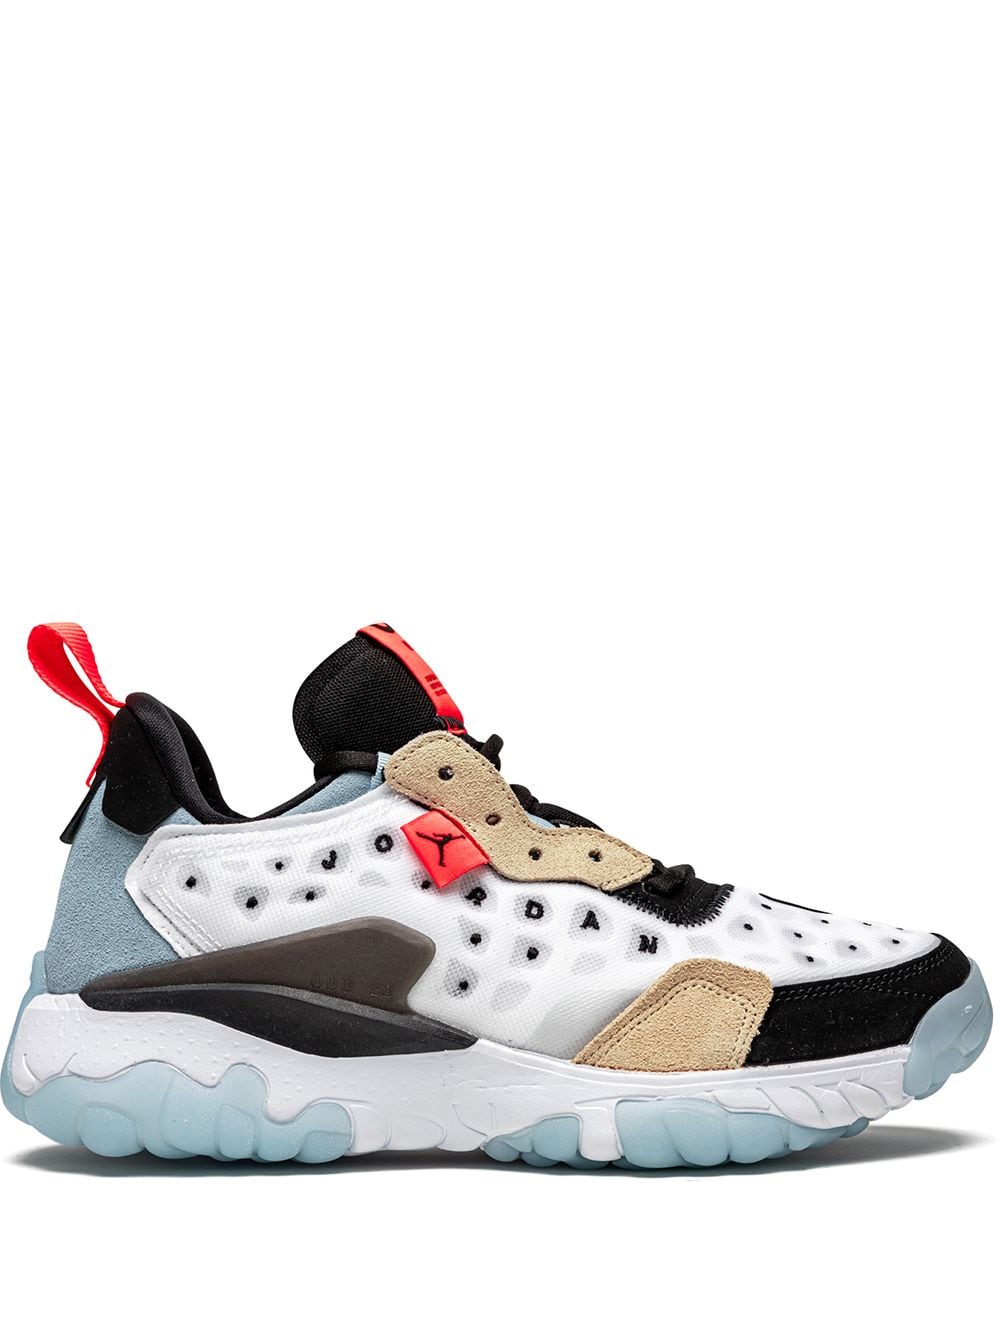 Jordan Jordan Delta 2 sneakers - White